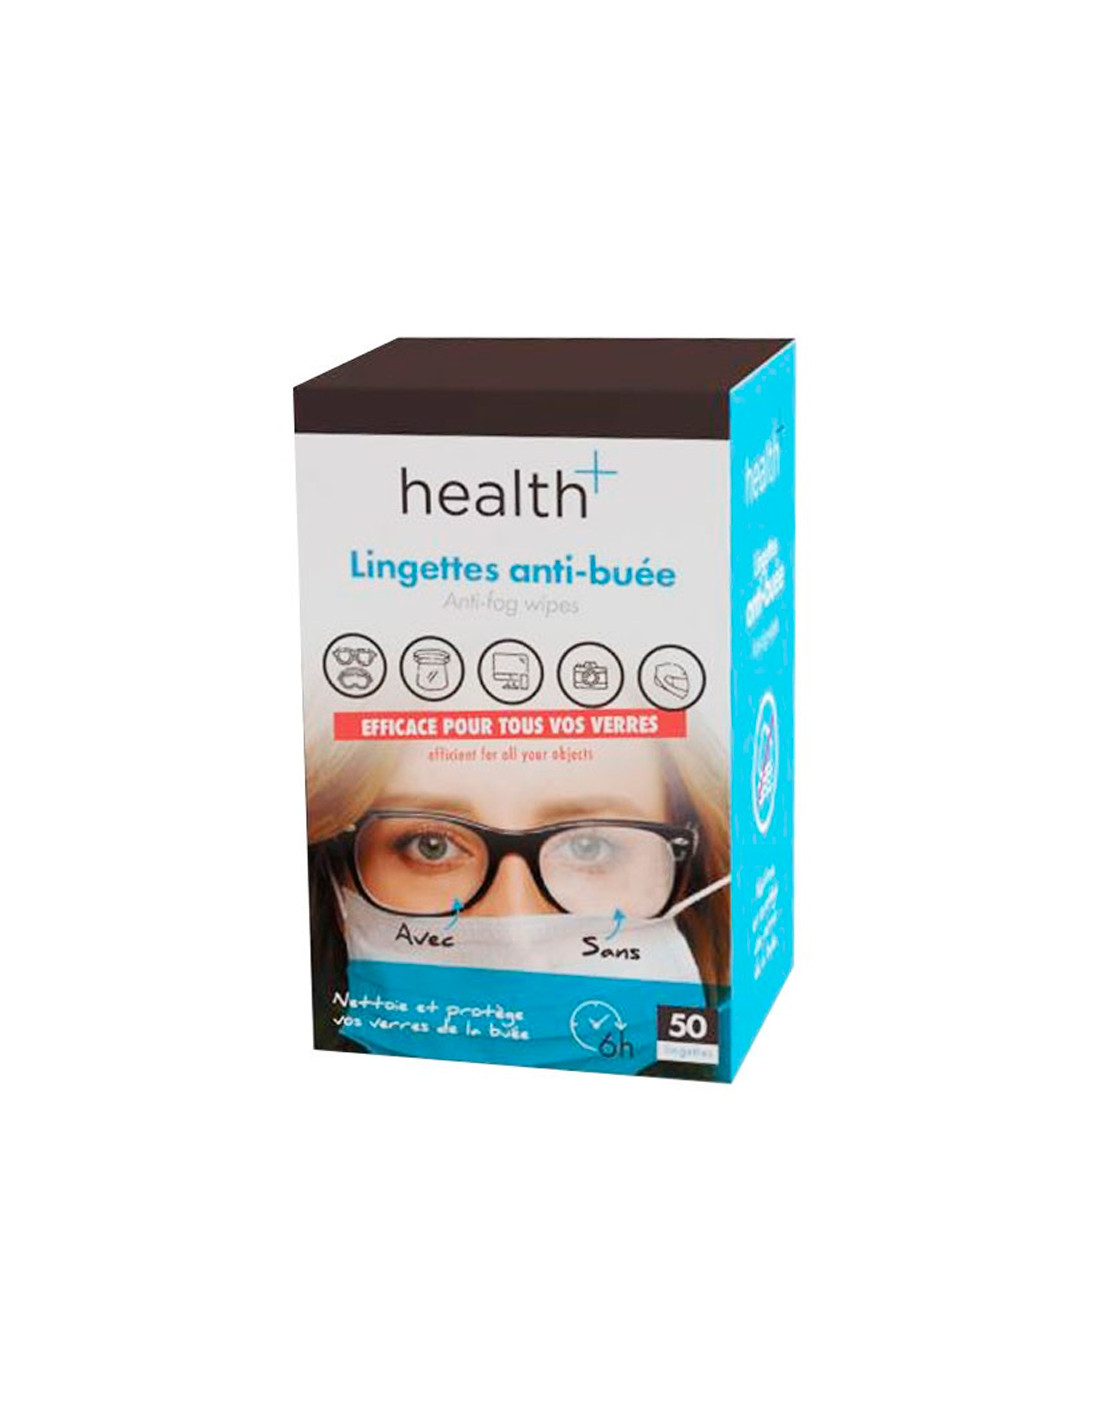 Zeiss lingettes anti-buée pour lunette Boite de 30